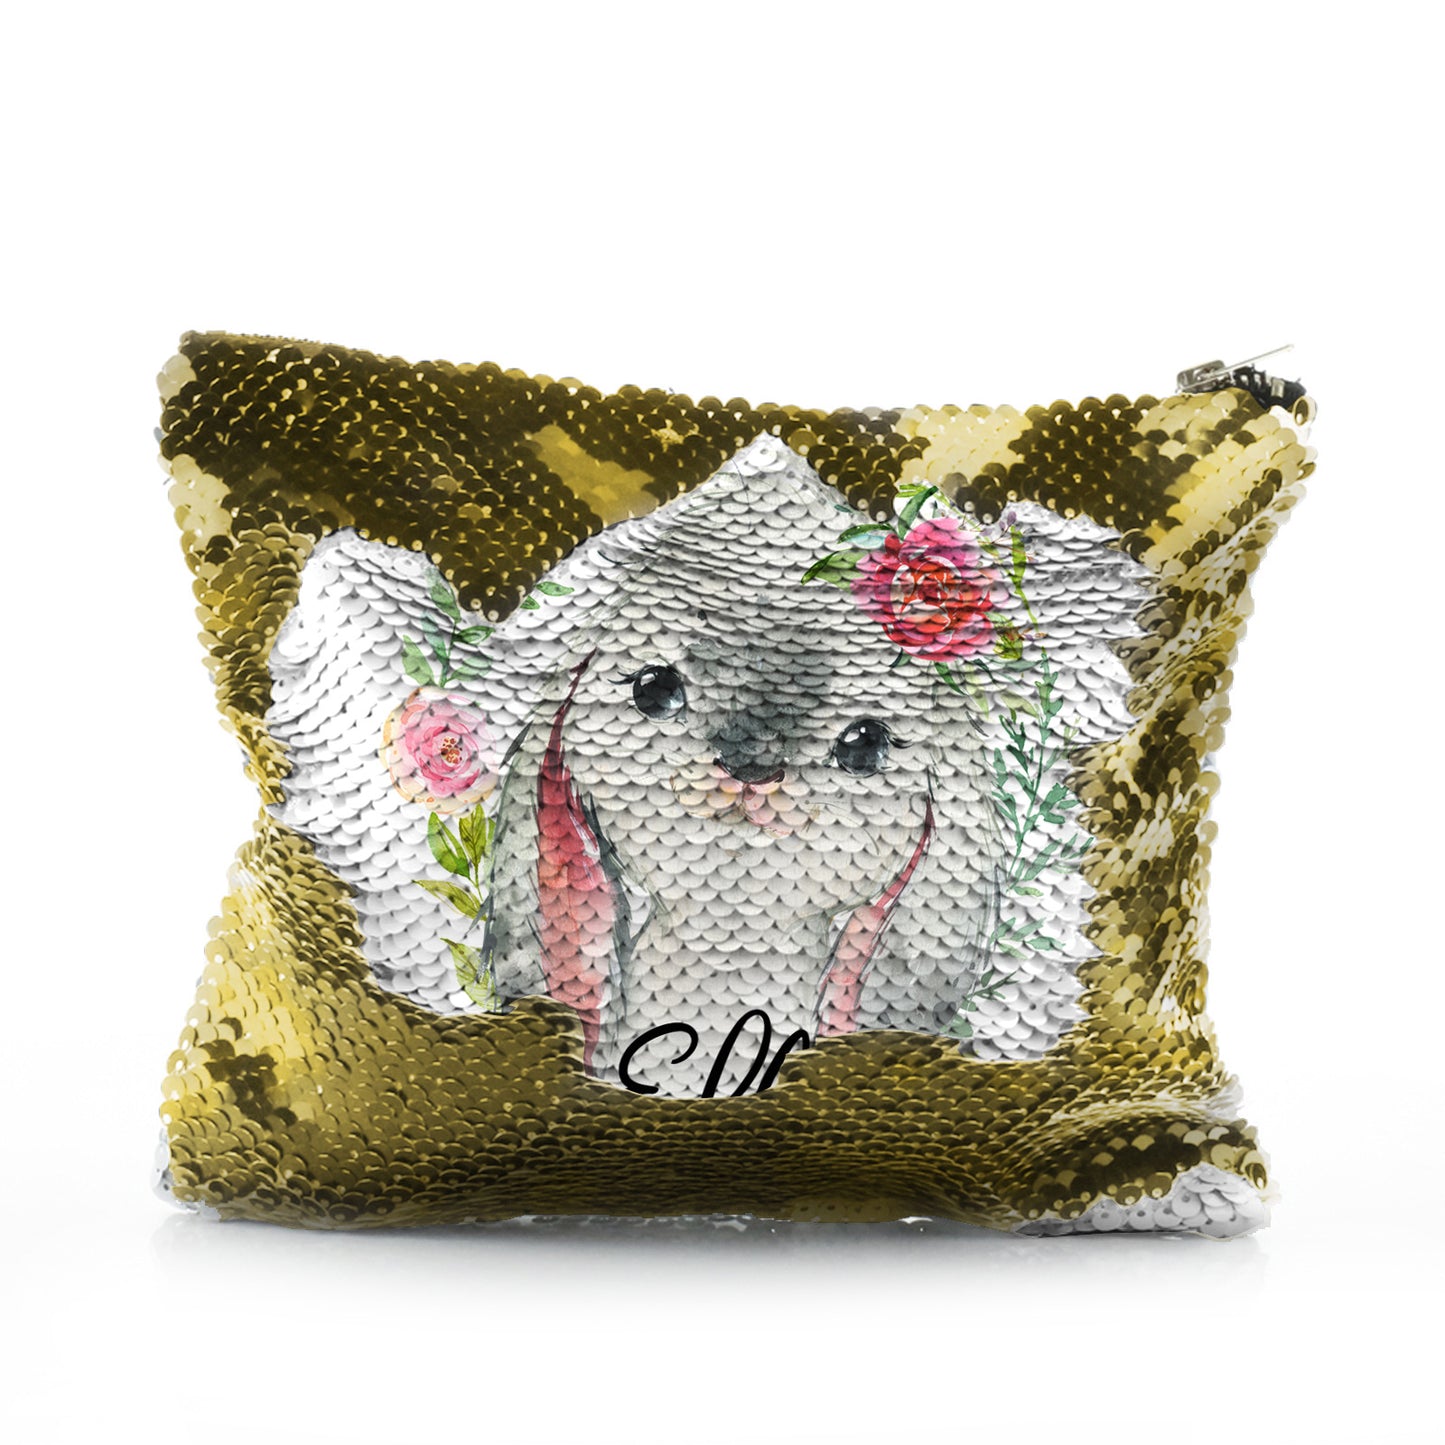 Personalisierte Pailletten-Reißverschlusstasche mit grauem Hasenblumenkranz und süßem Text